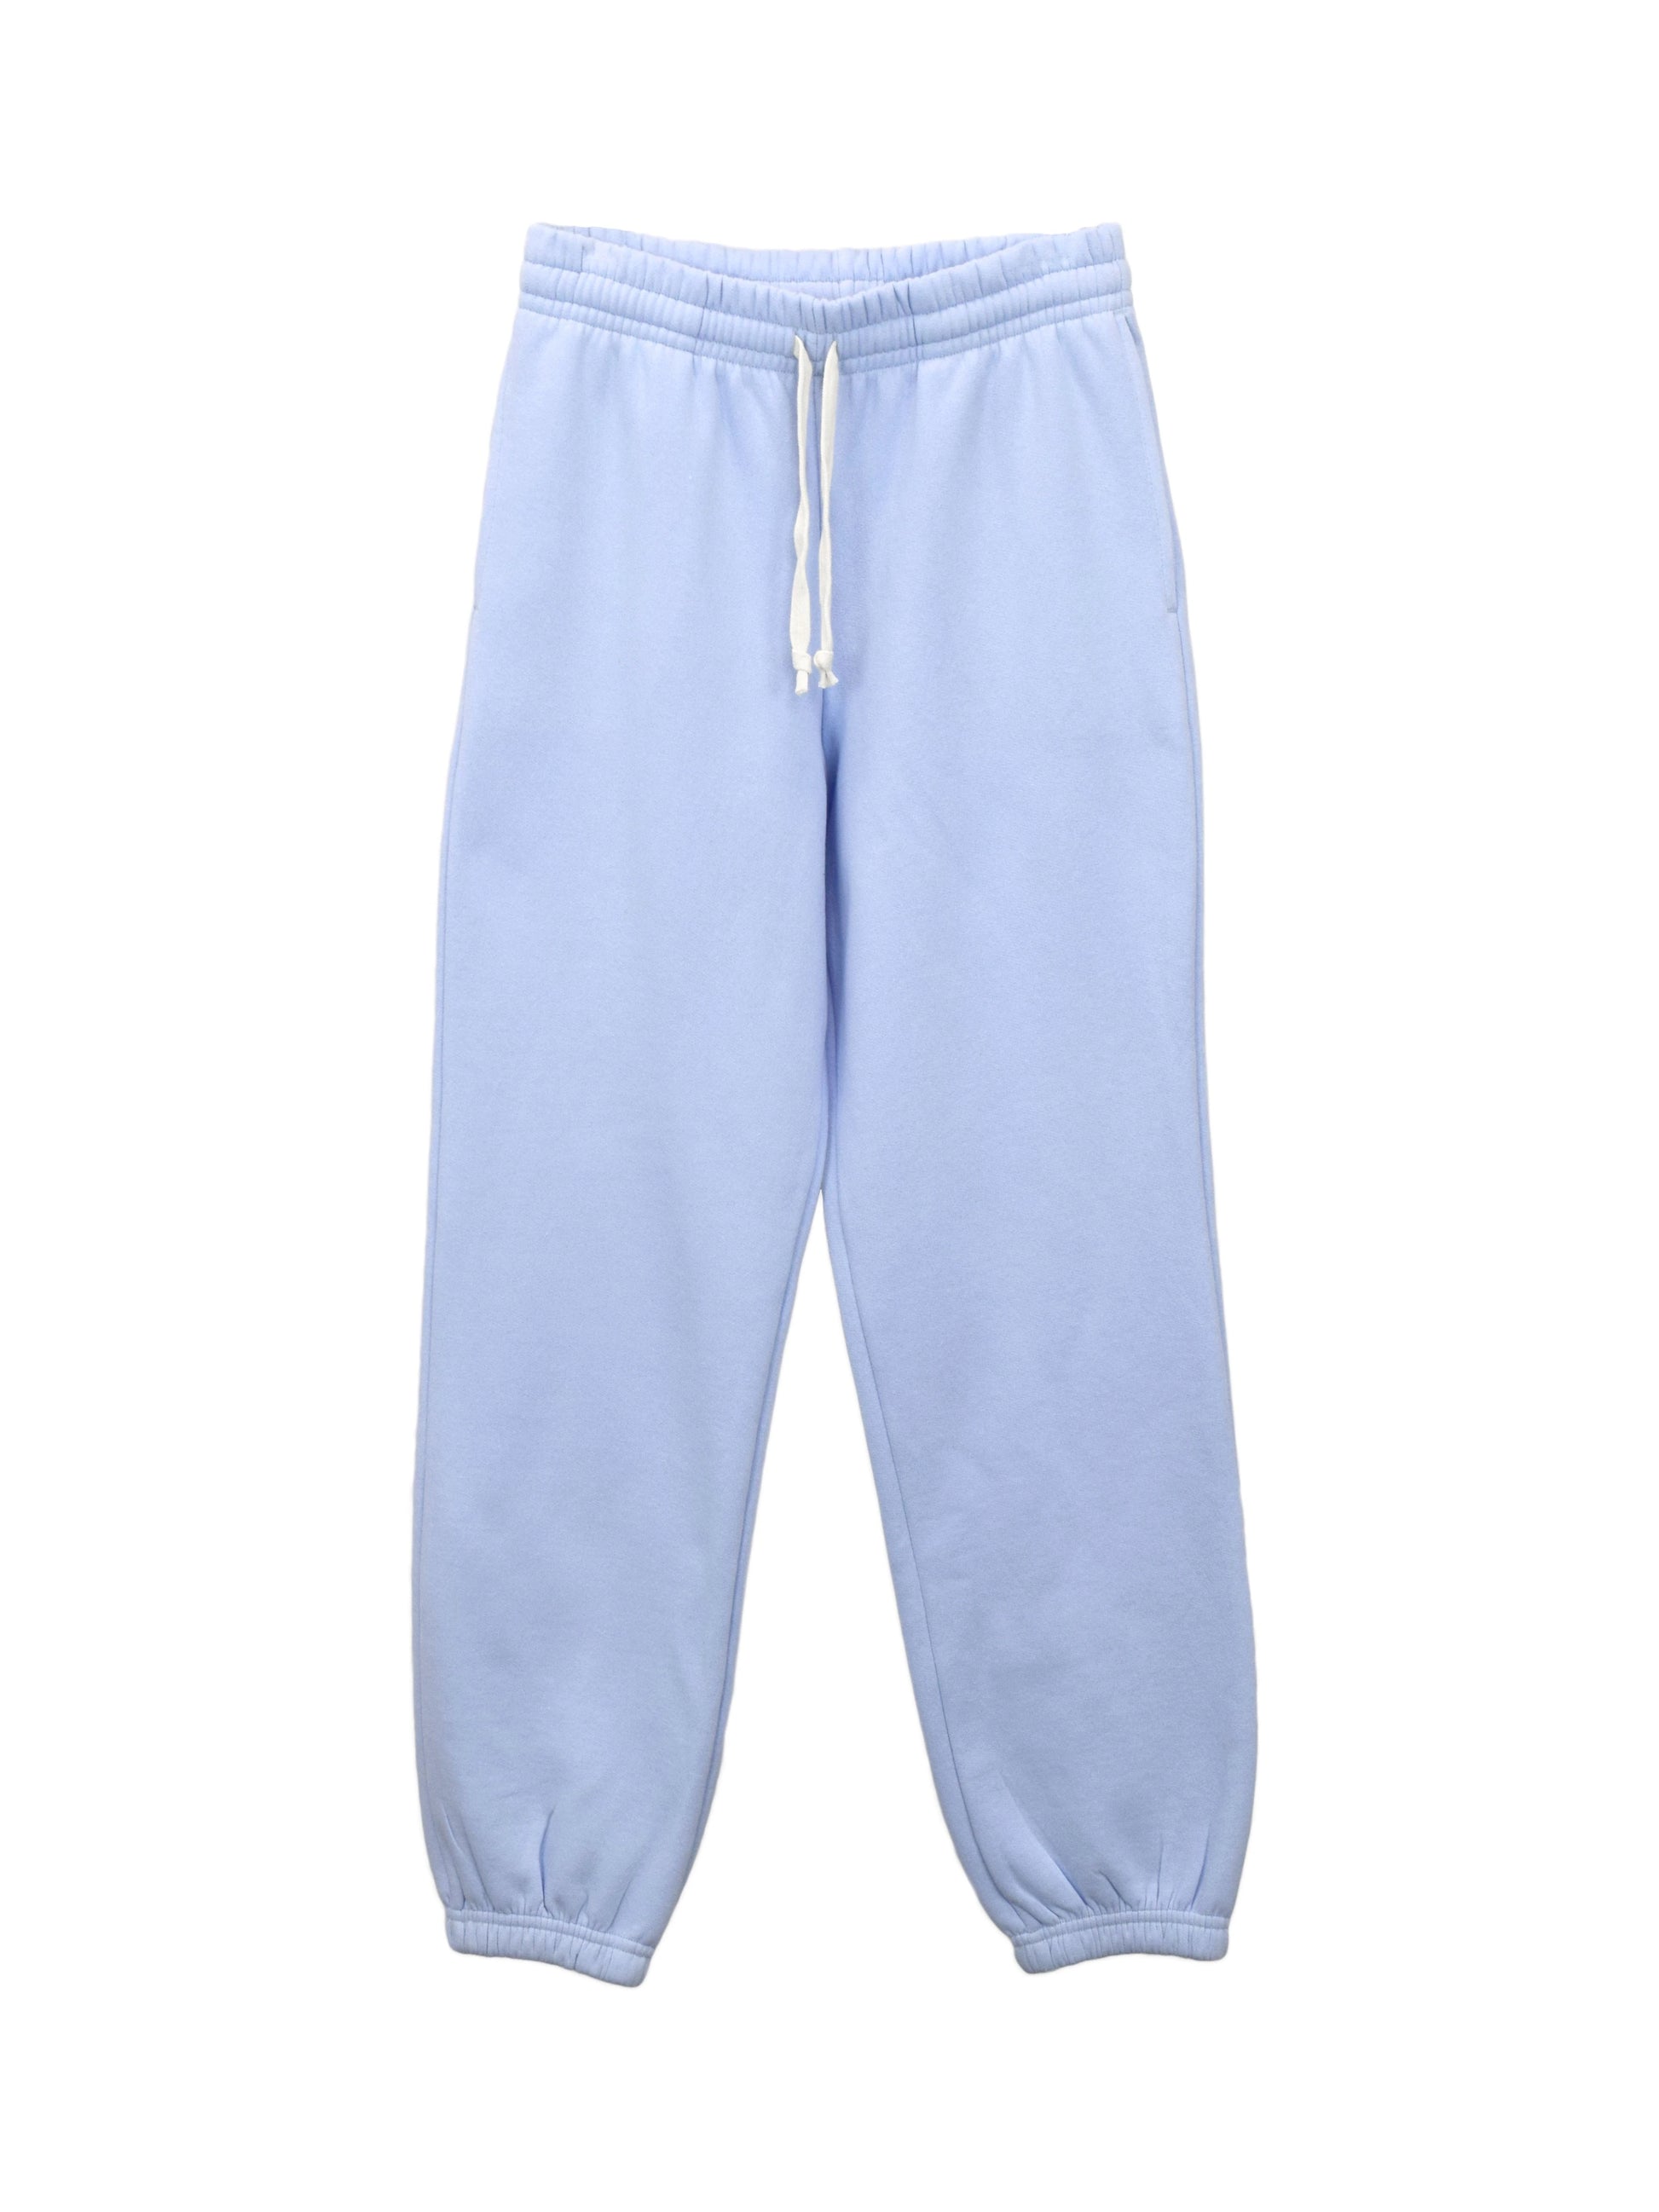 Park Sweatpants - Airy Blue Fleece